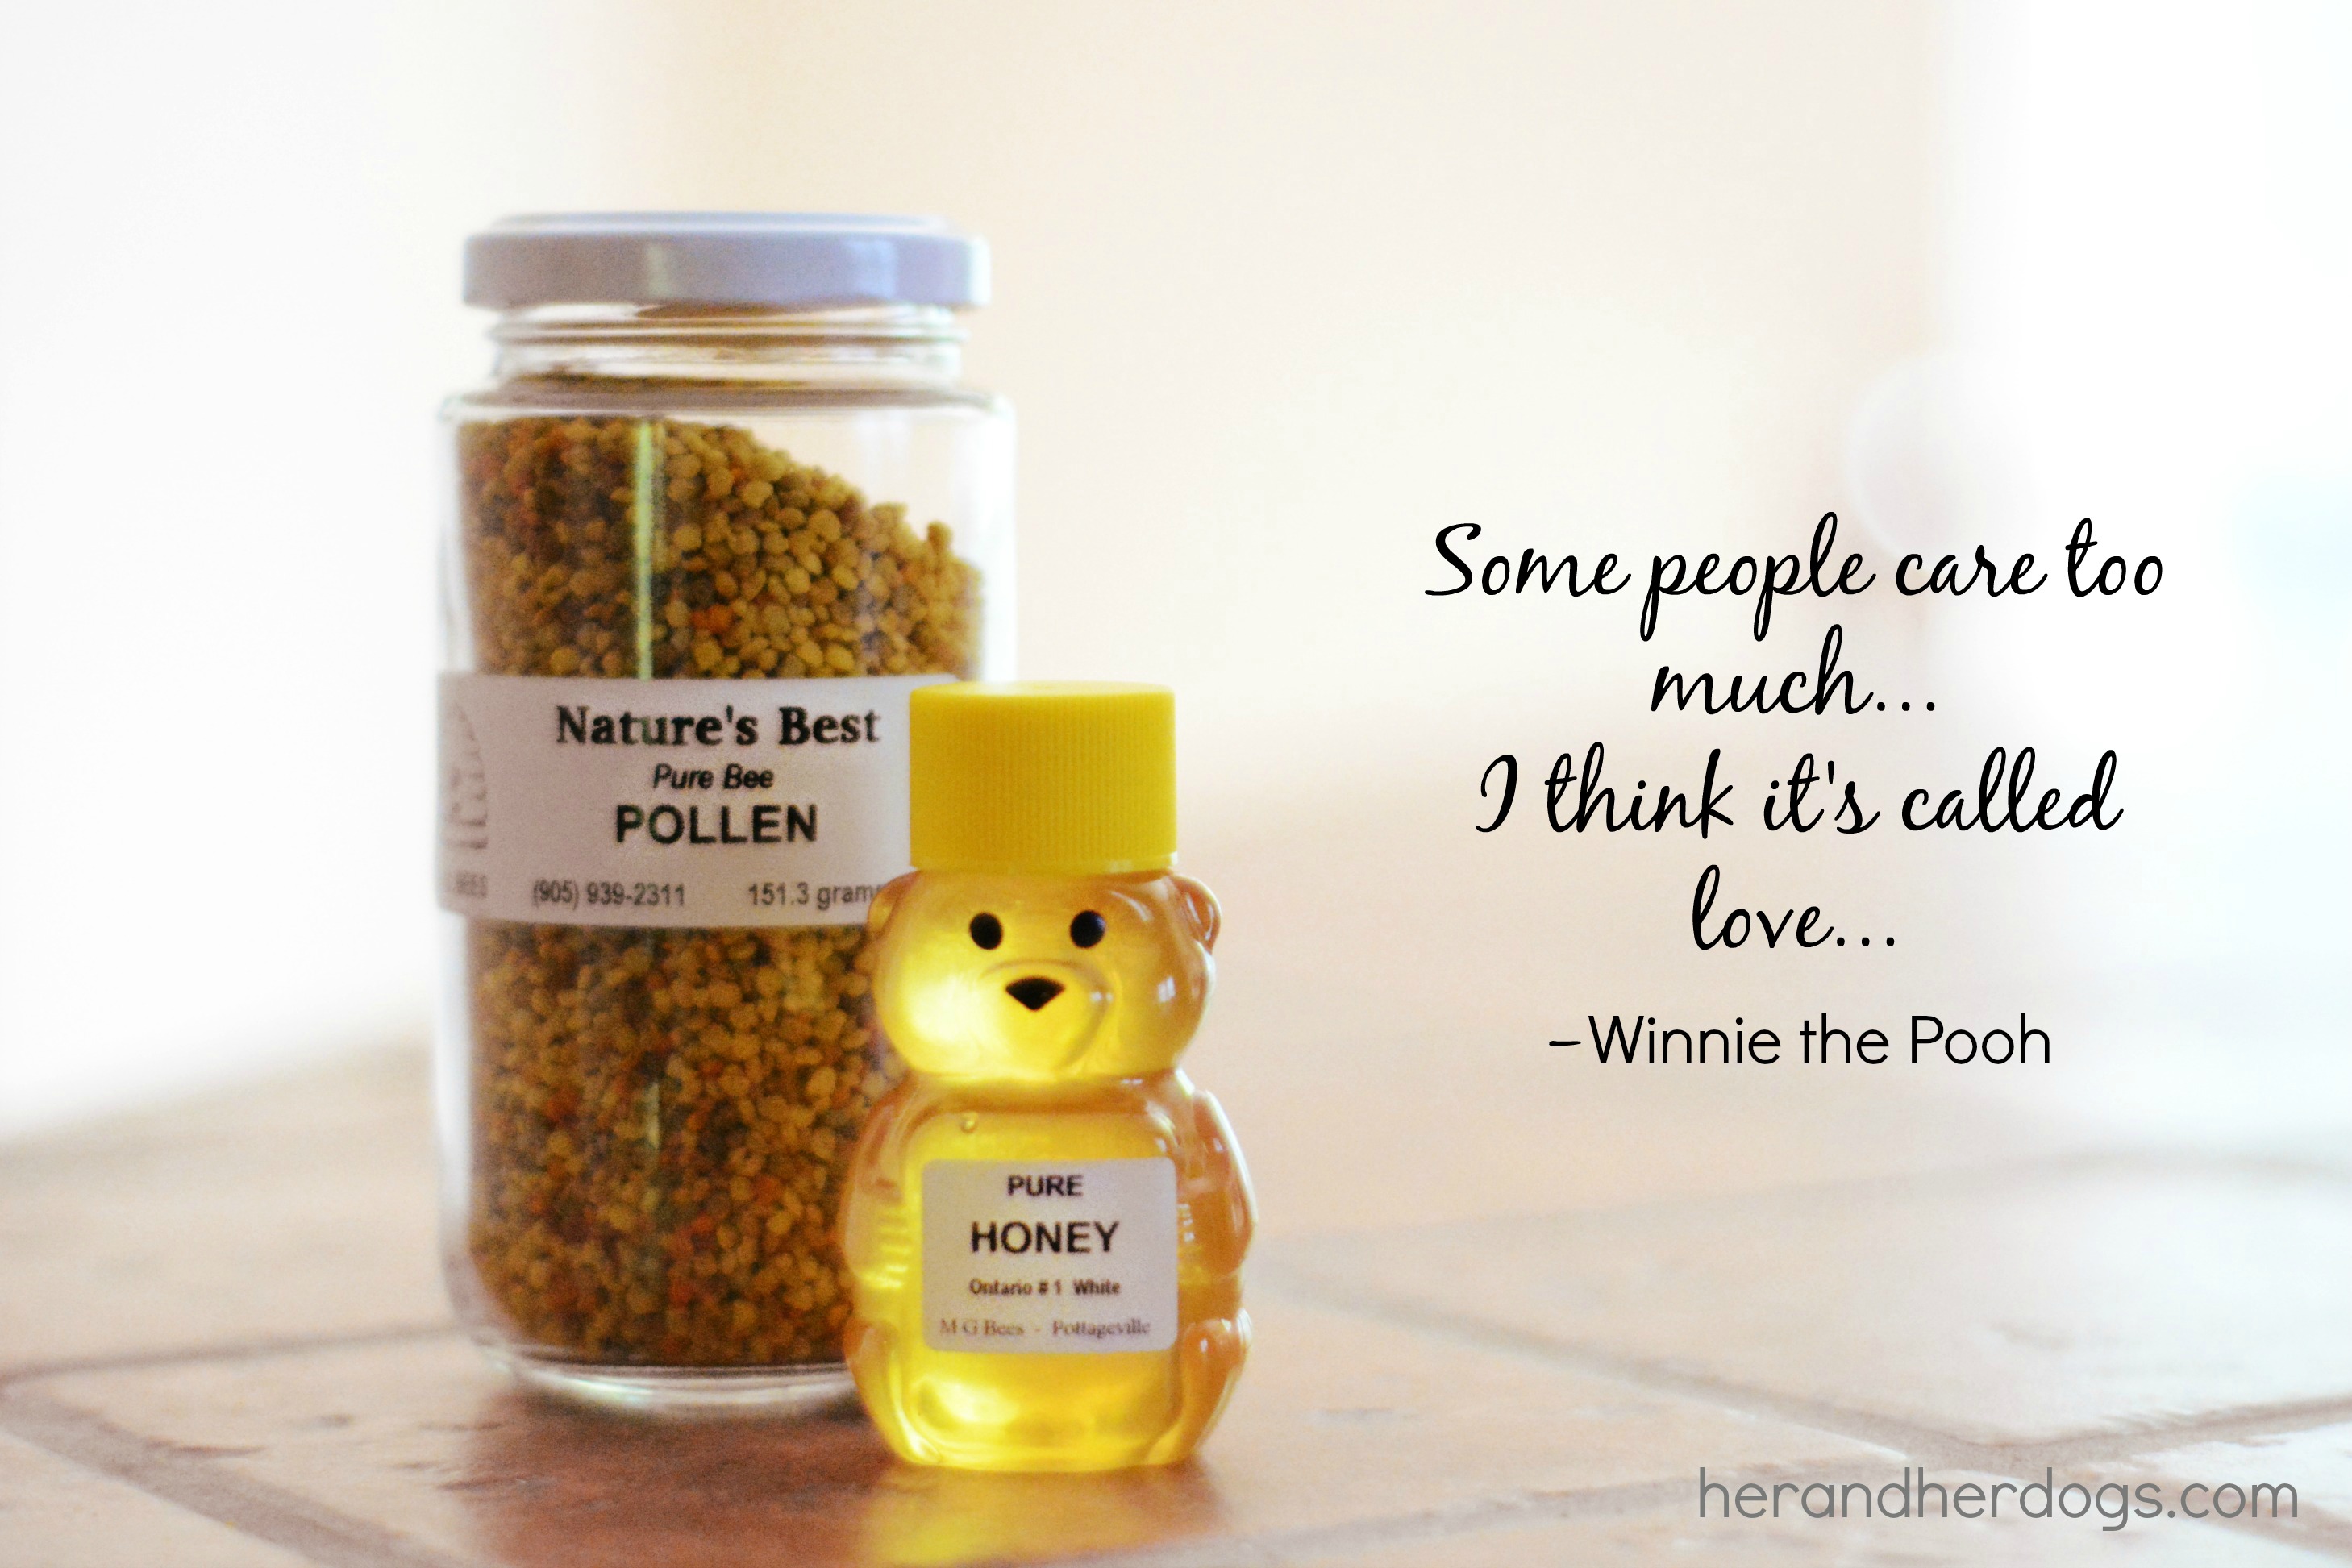 Pooh quote